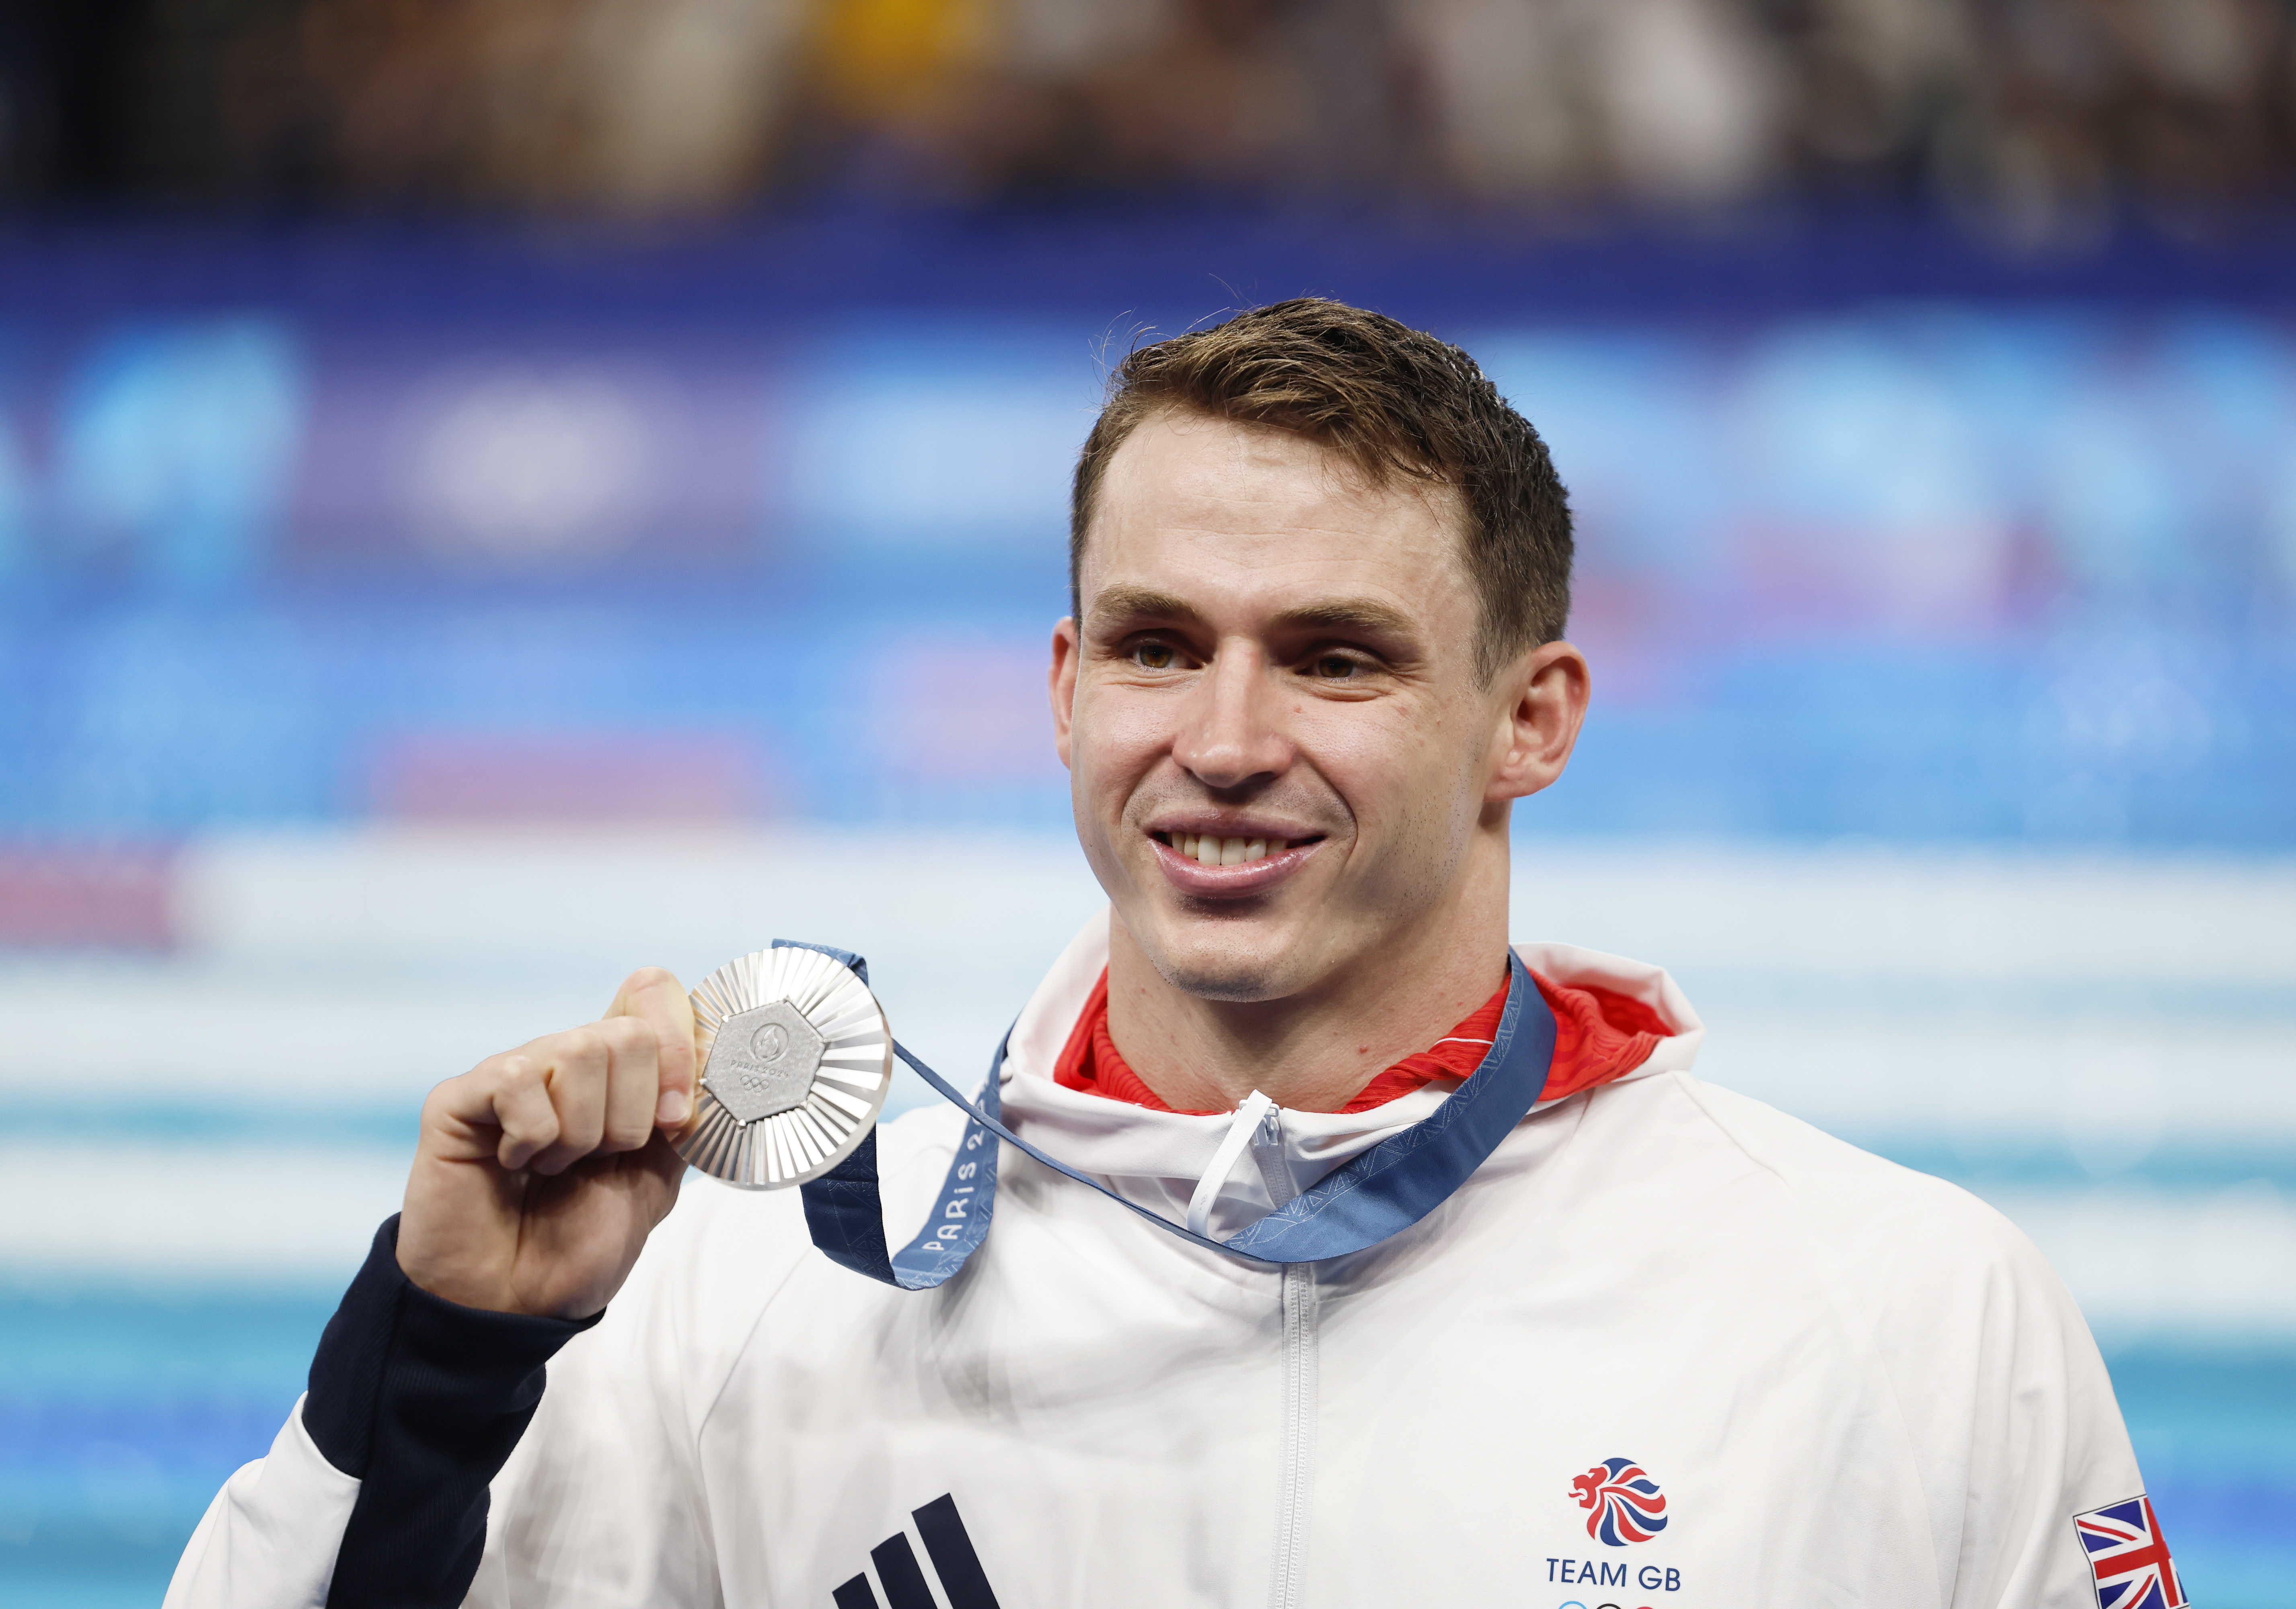 Le médaillé d'argent Ben Proud a été devancé dans la finale du 50 m nage libre